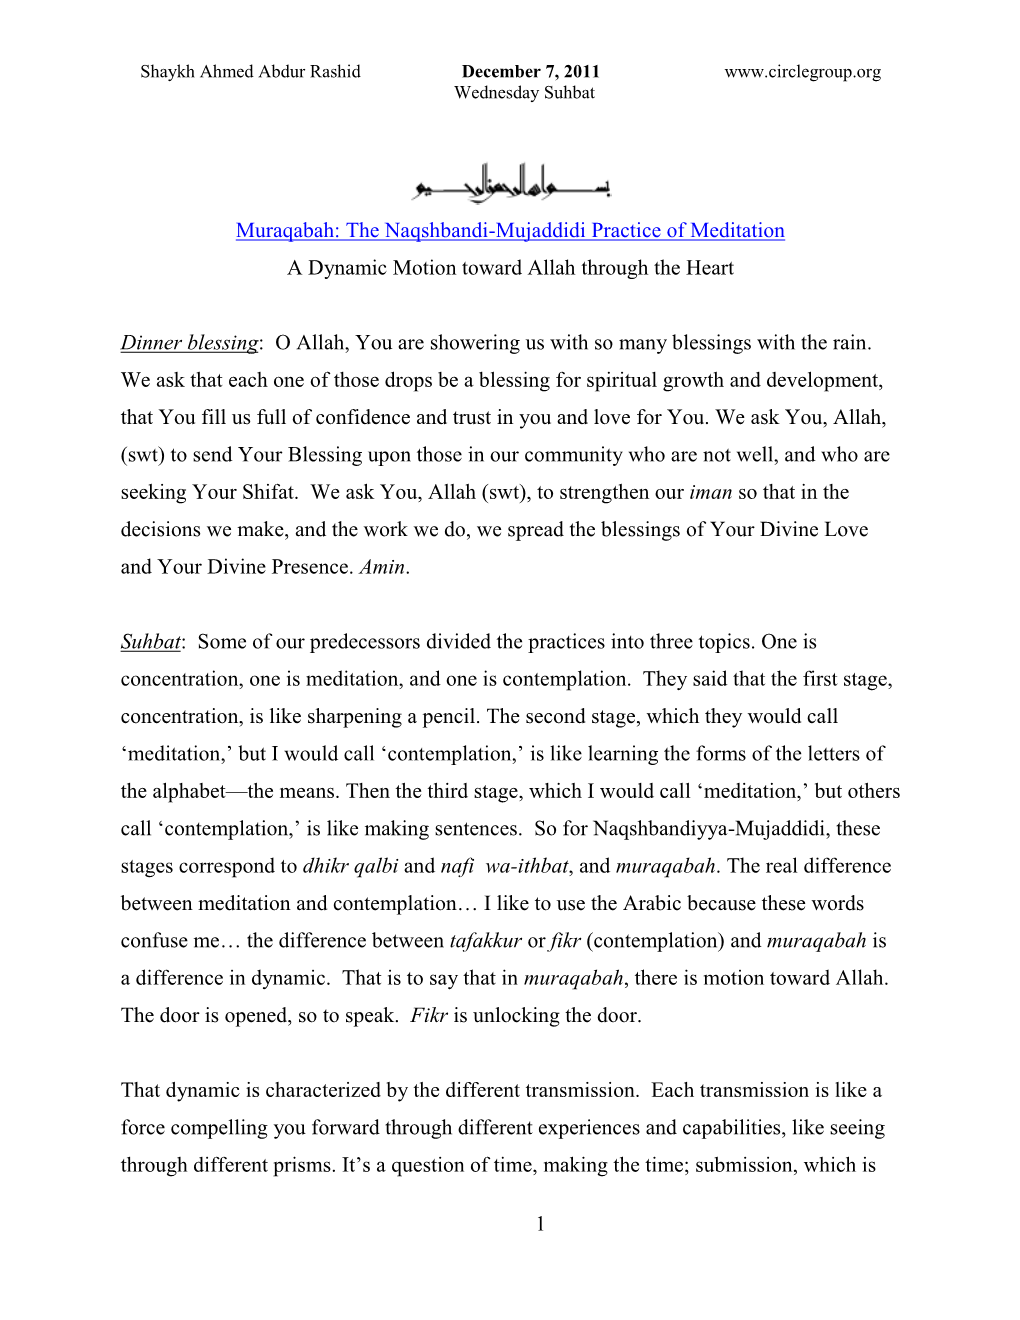 1 Muraqabah: the Naqshbandi-Mujaddidi Practice Of